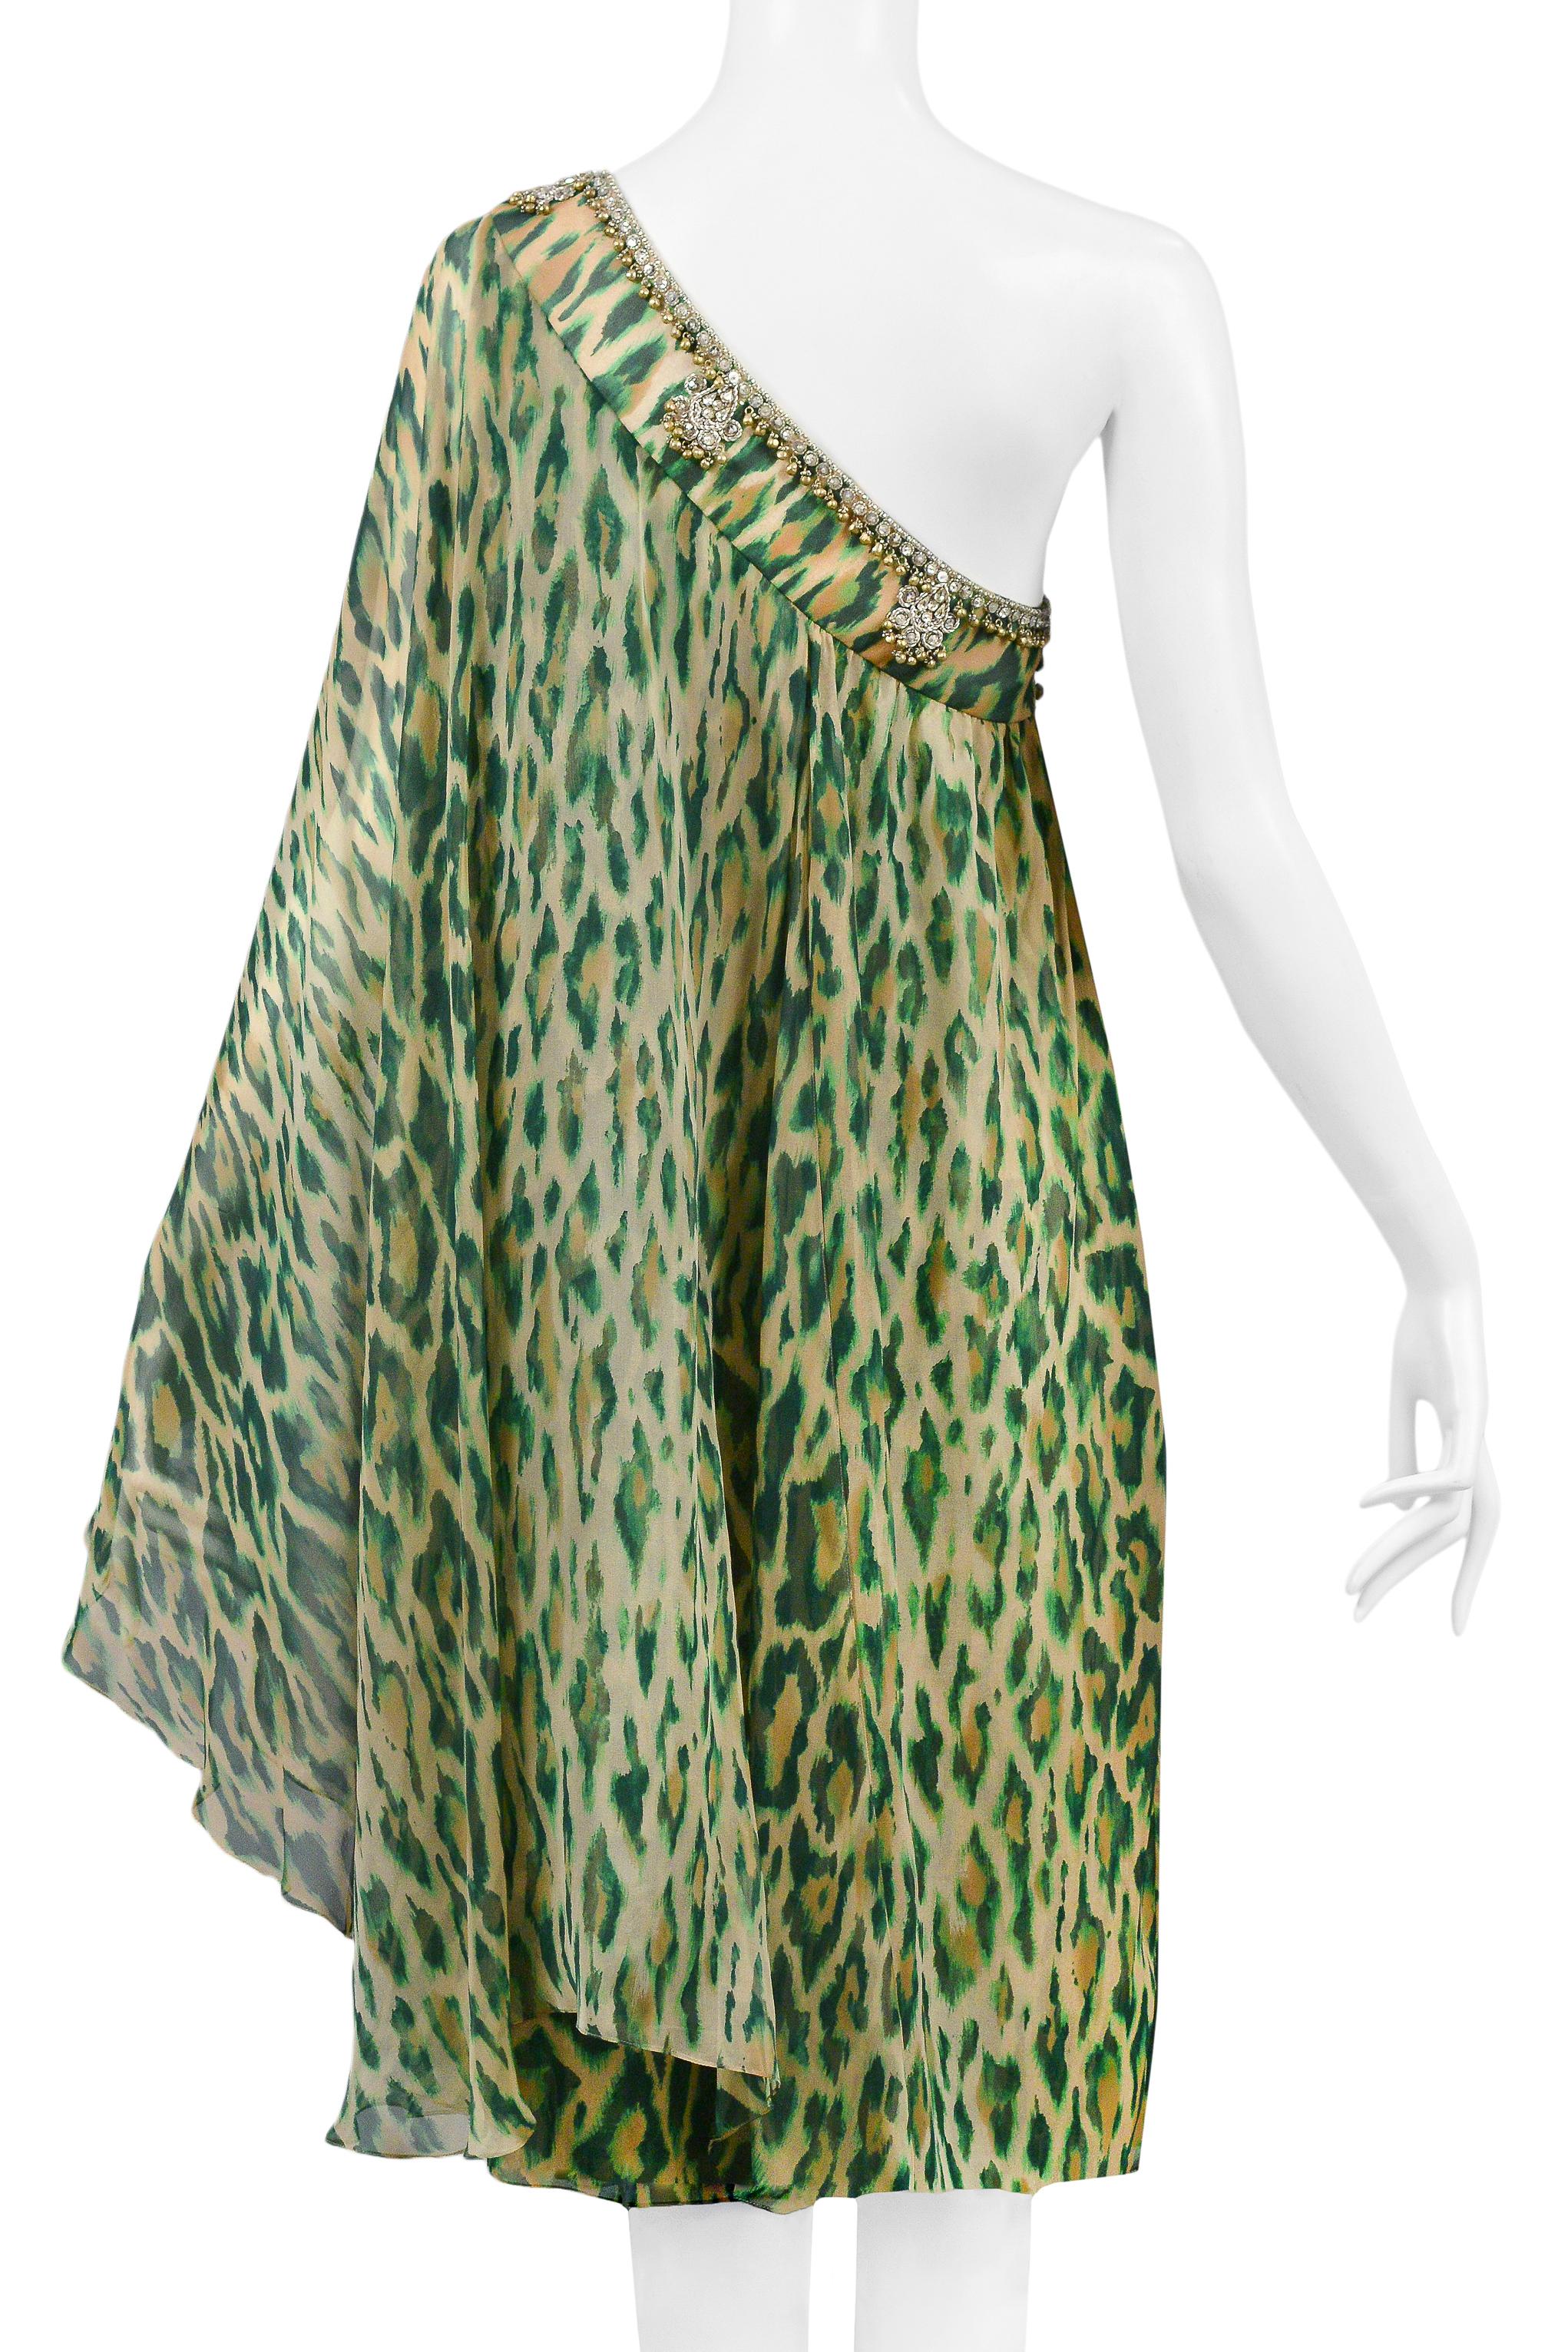 Christian Dior Green Leopard One Shoulder Sari Dress 2008 For Sale 4